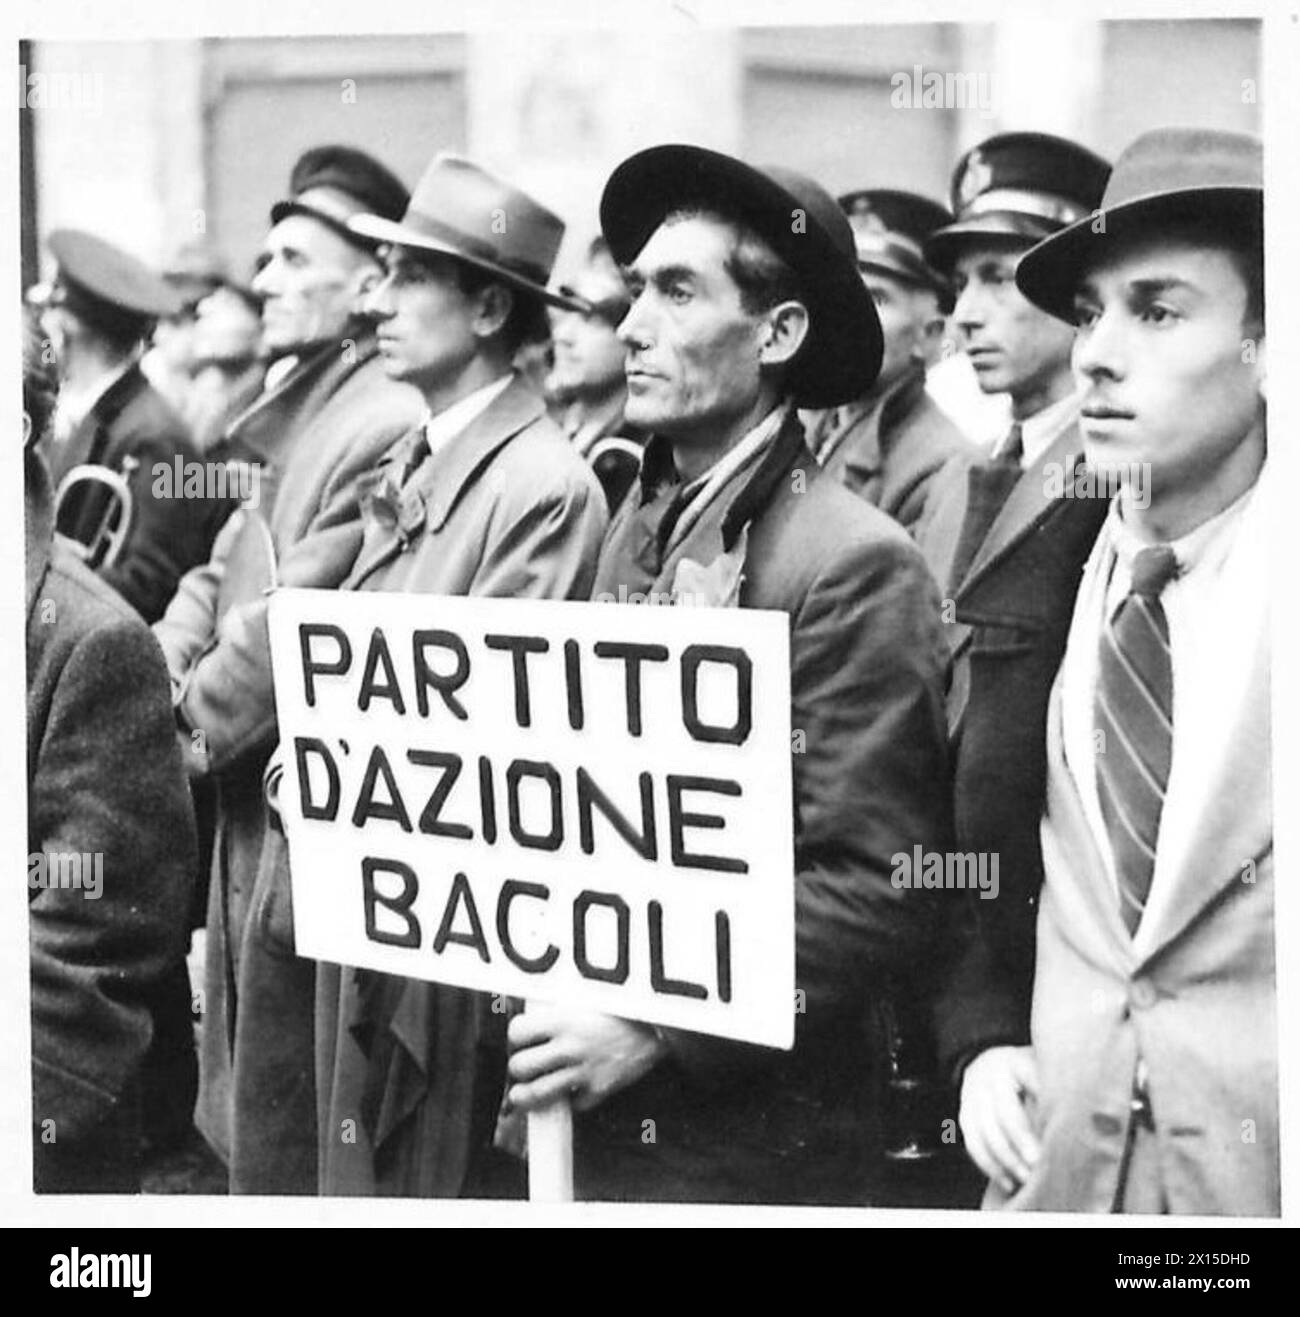 ITALIE : RENCONTRE POLITIQUE À NAPLES - Une étude des expressions de la foule lors d'un des discours de l'armée britannique Banque D'Images